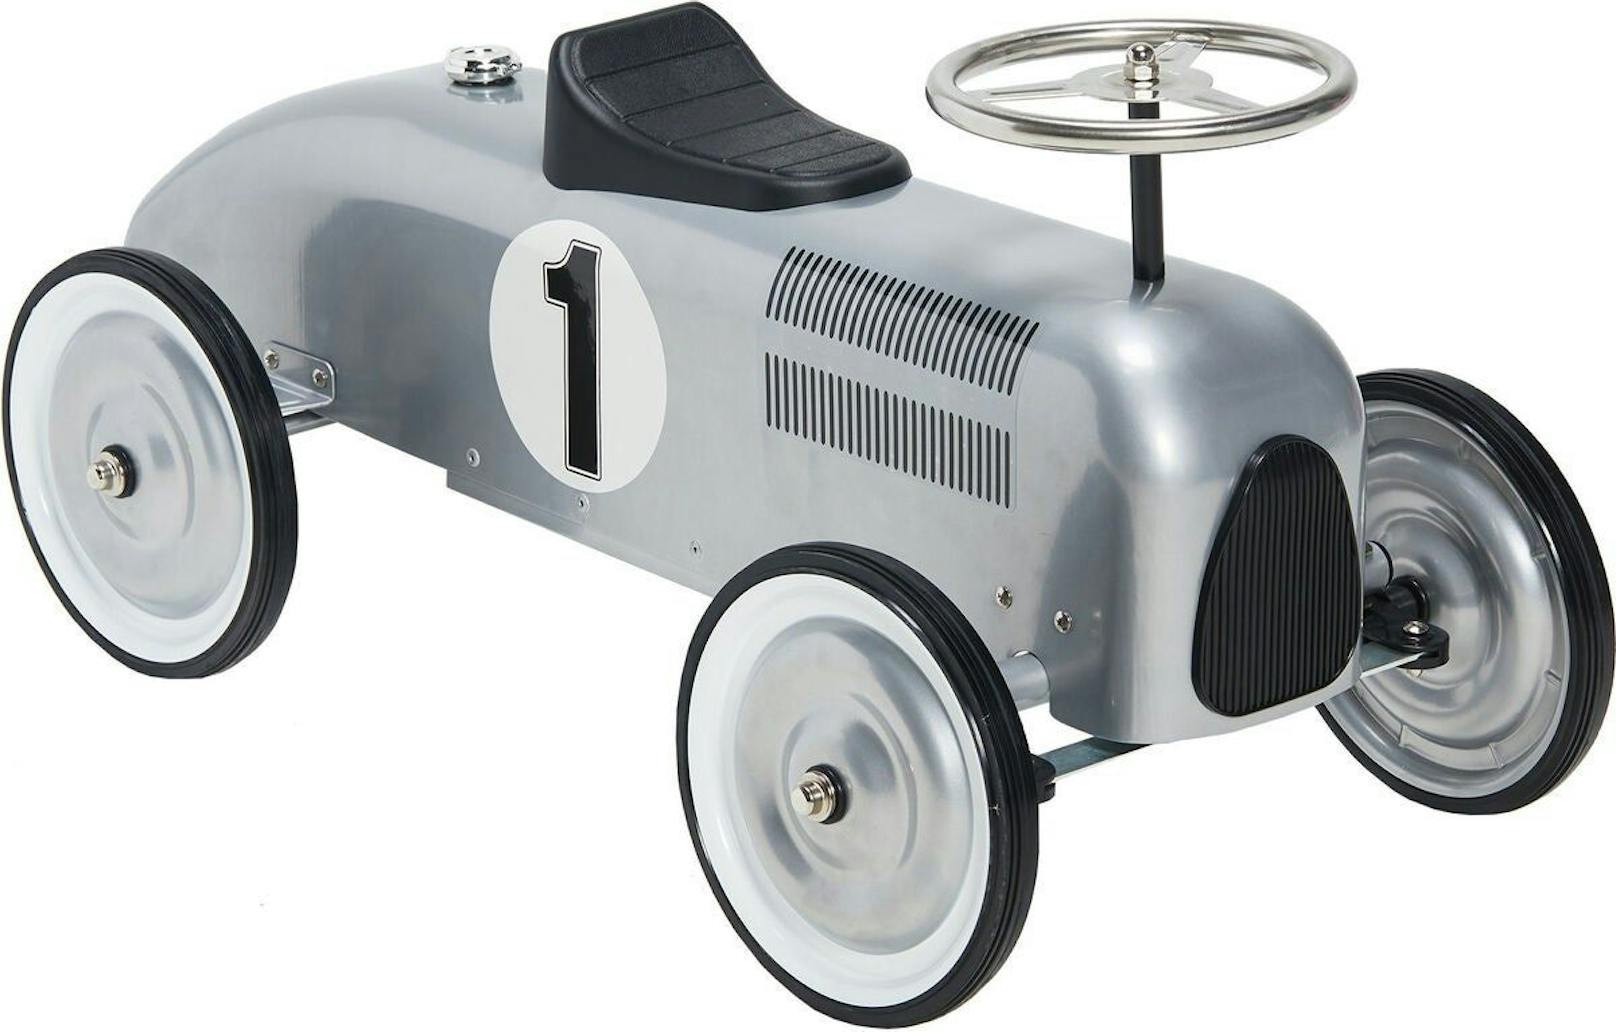 Rutschauto Lil Racer von Mini Speeders, um&nbsp;75,99 Euro auf<a href="https://www.jollyroom.at/spielzeug/tret-rutschautos/rutschautos/mini-speeders-rutschauto-lil-racer-silber"> jollyroom.at.</a>